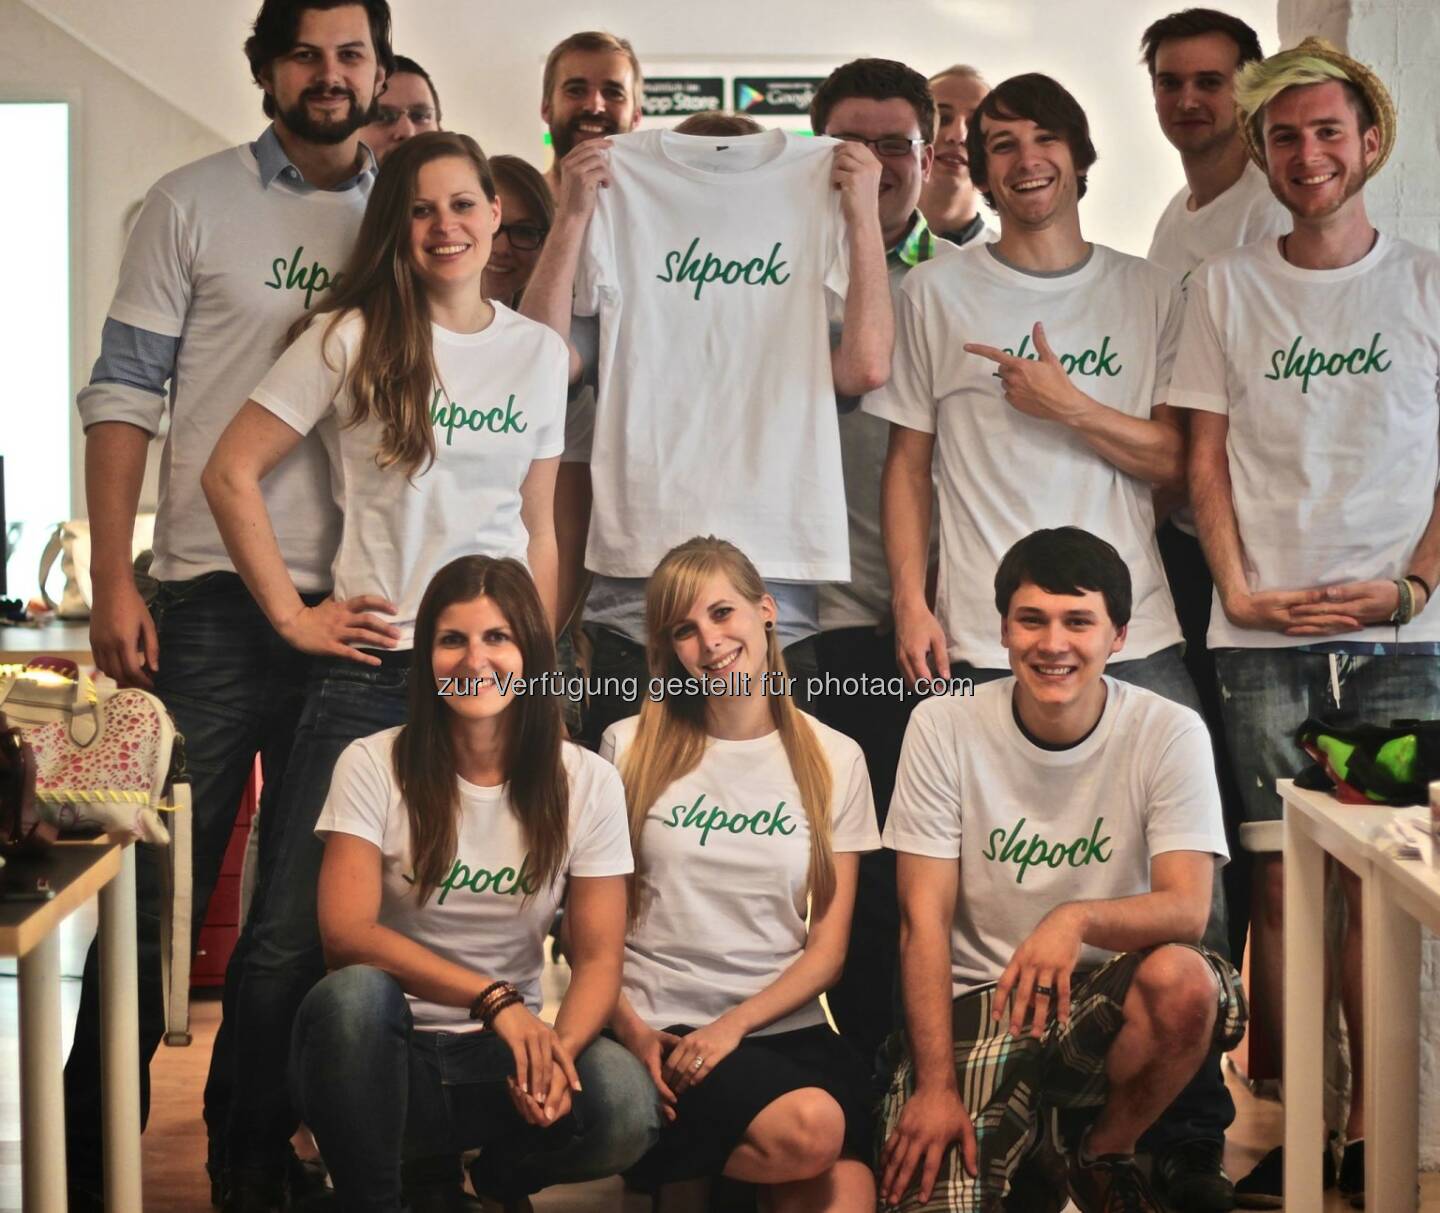 Das shpock-Team, der mobile Flohmarkt für schöne Shirts, äh ... Dinge, mehr unter http://www.finanzmarktfoto.at/search/shpock